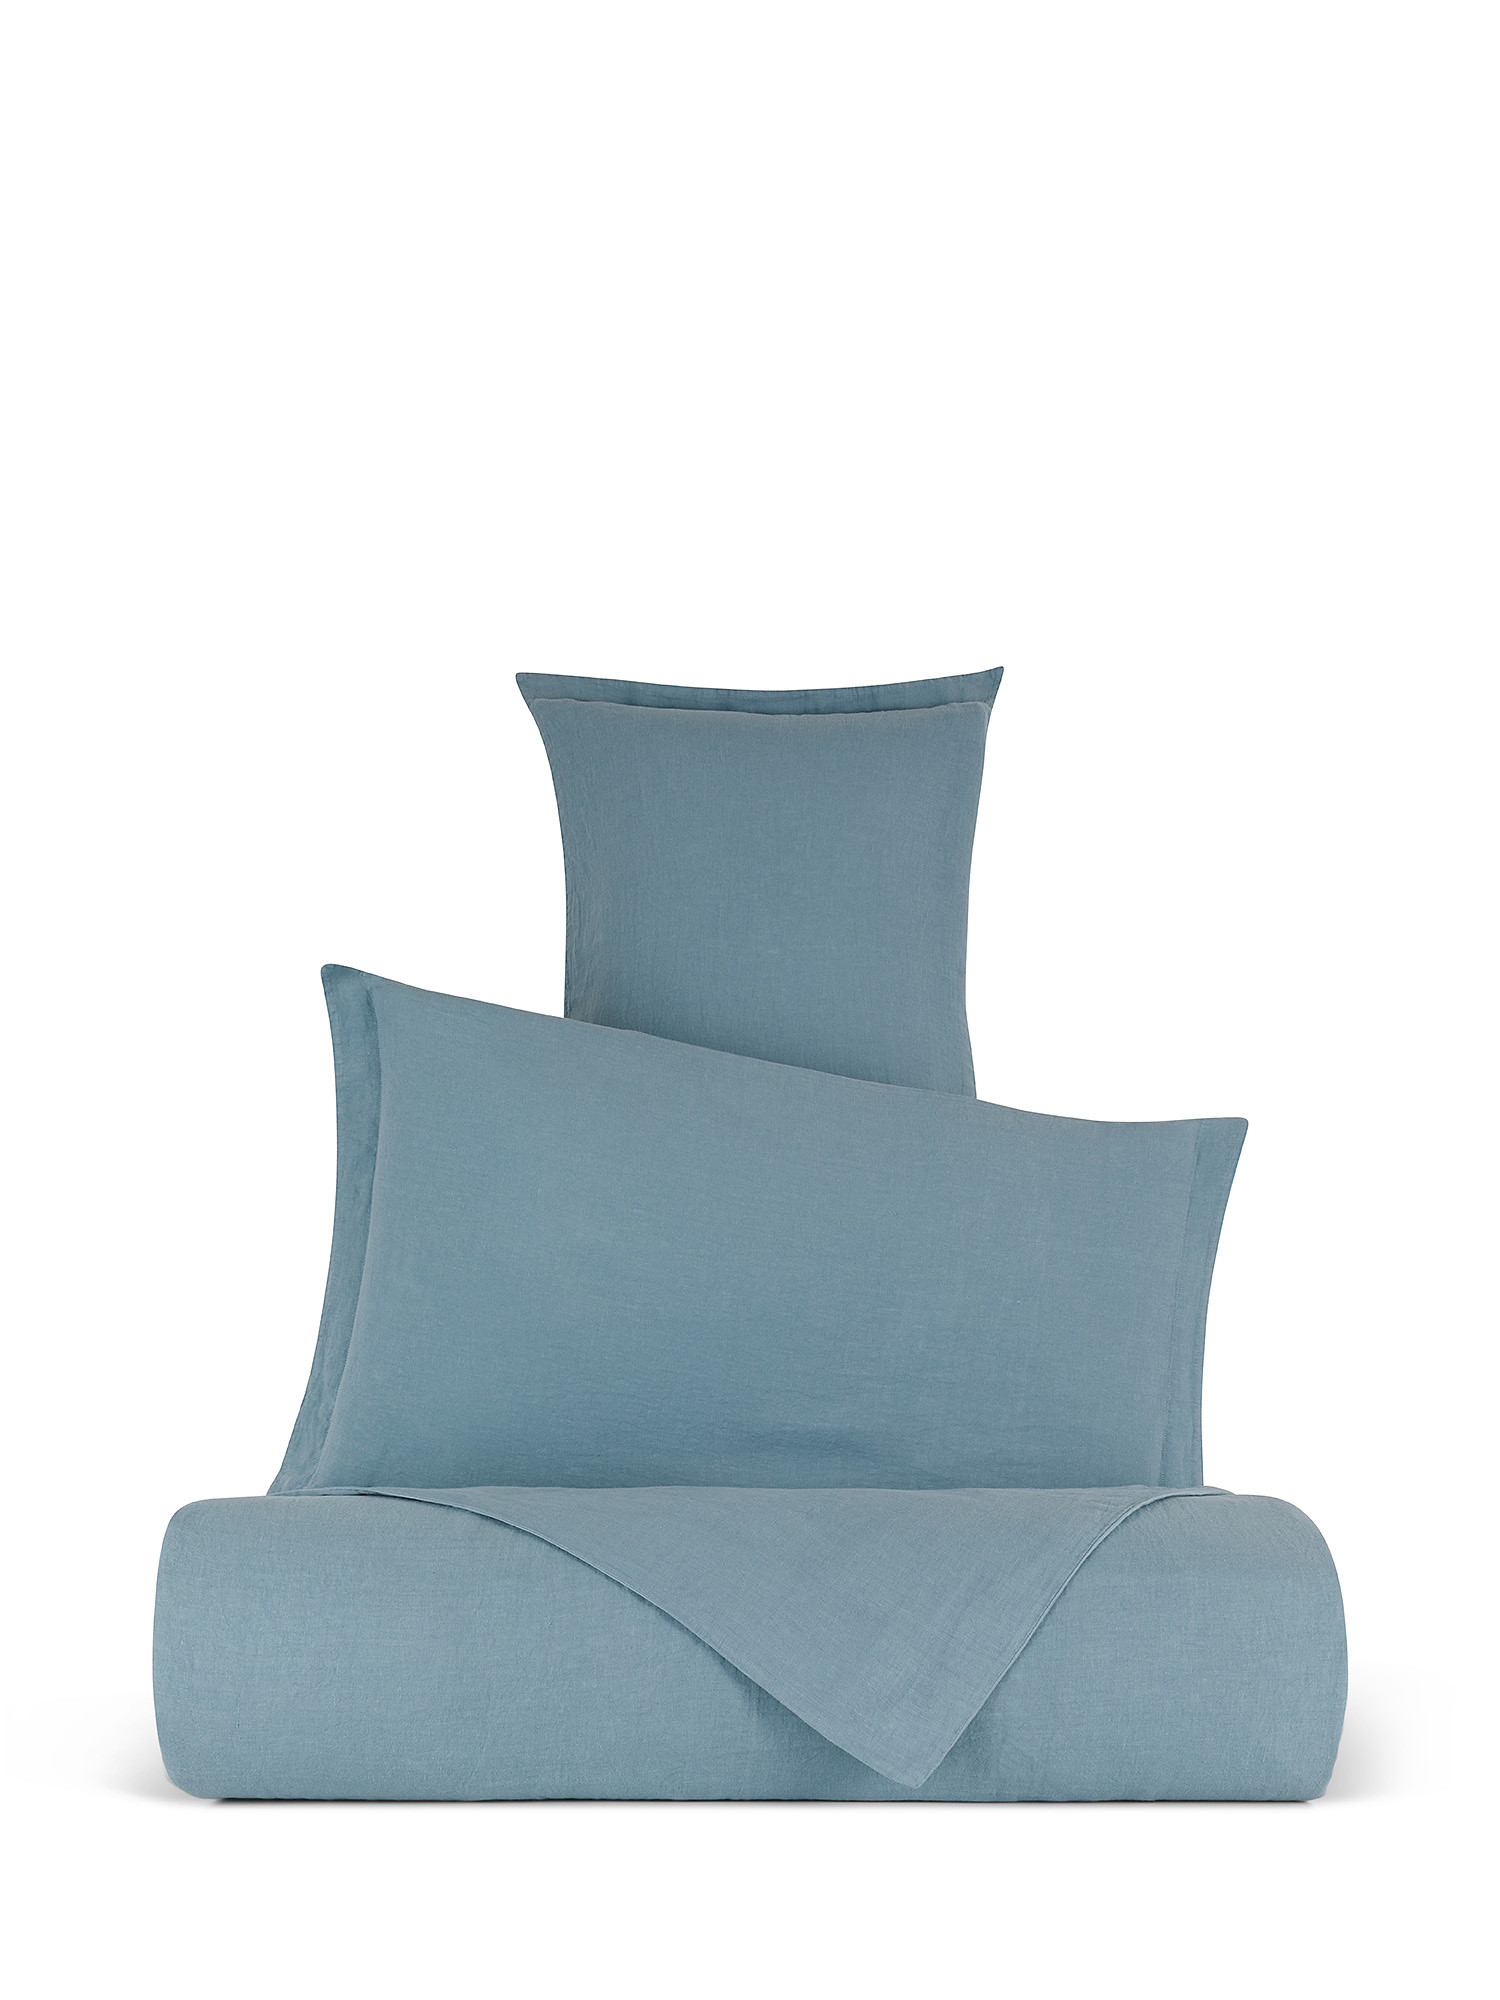 Zefiro plain pure linen sheet, Blue, large image number 0